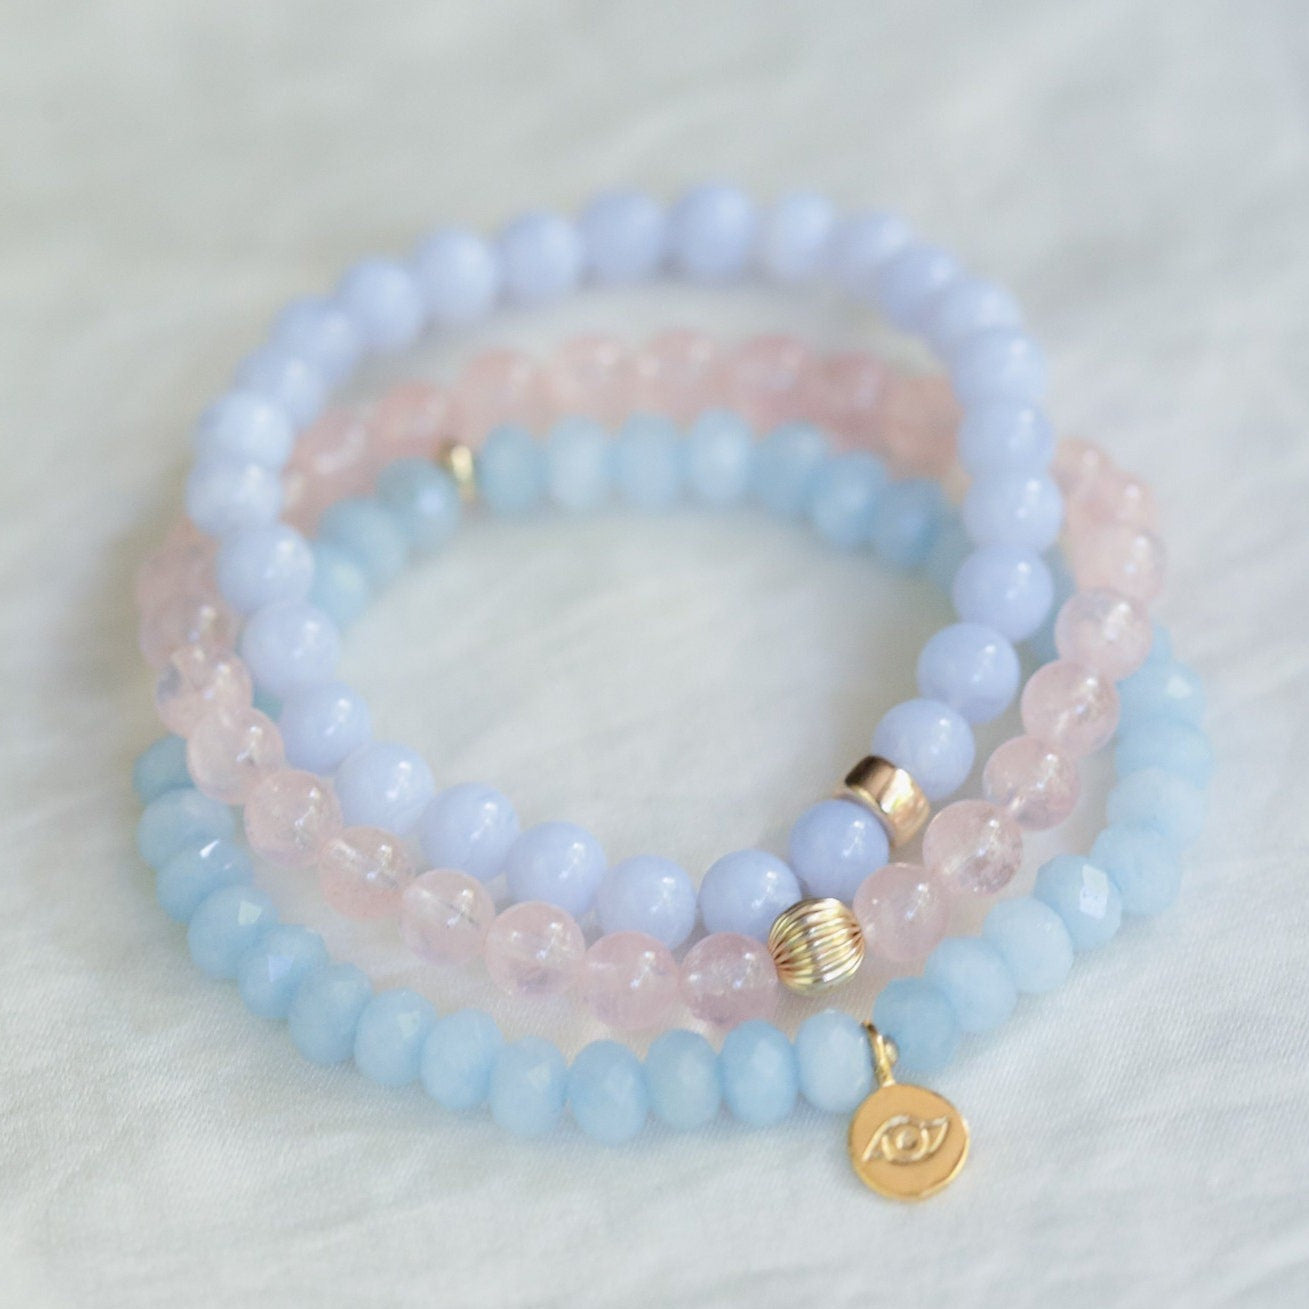 AAAA+ transparent Morganite | Pink Morganite jewelry | Beaded morganite bracelet | Morganite Crystal Gemstone 6mm | Love Bracelet